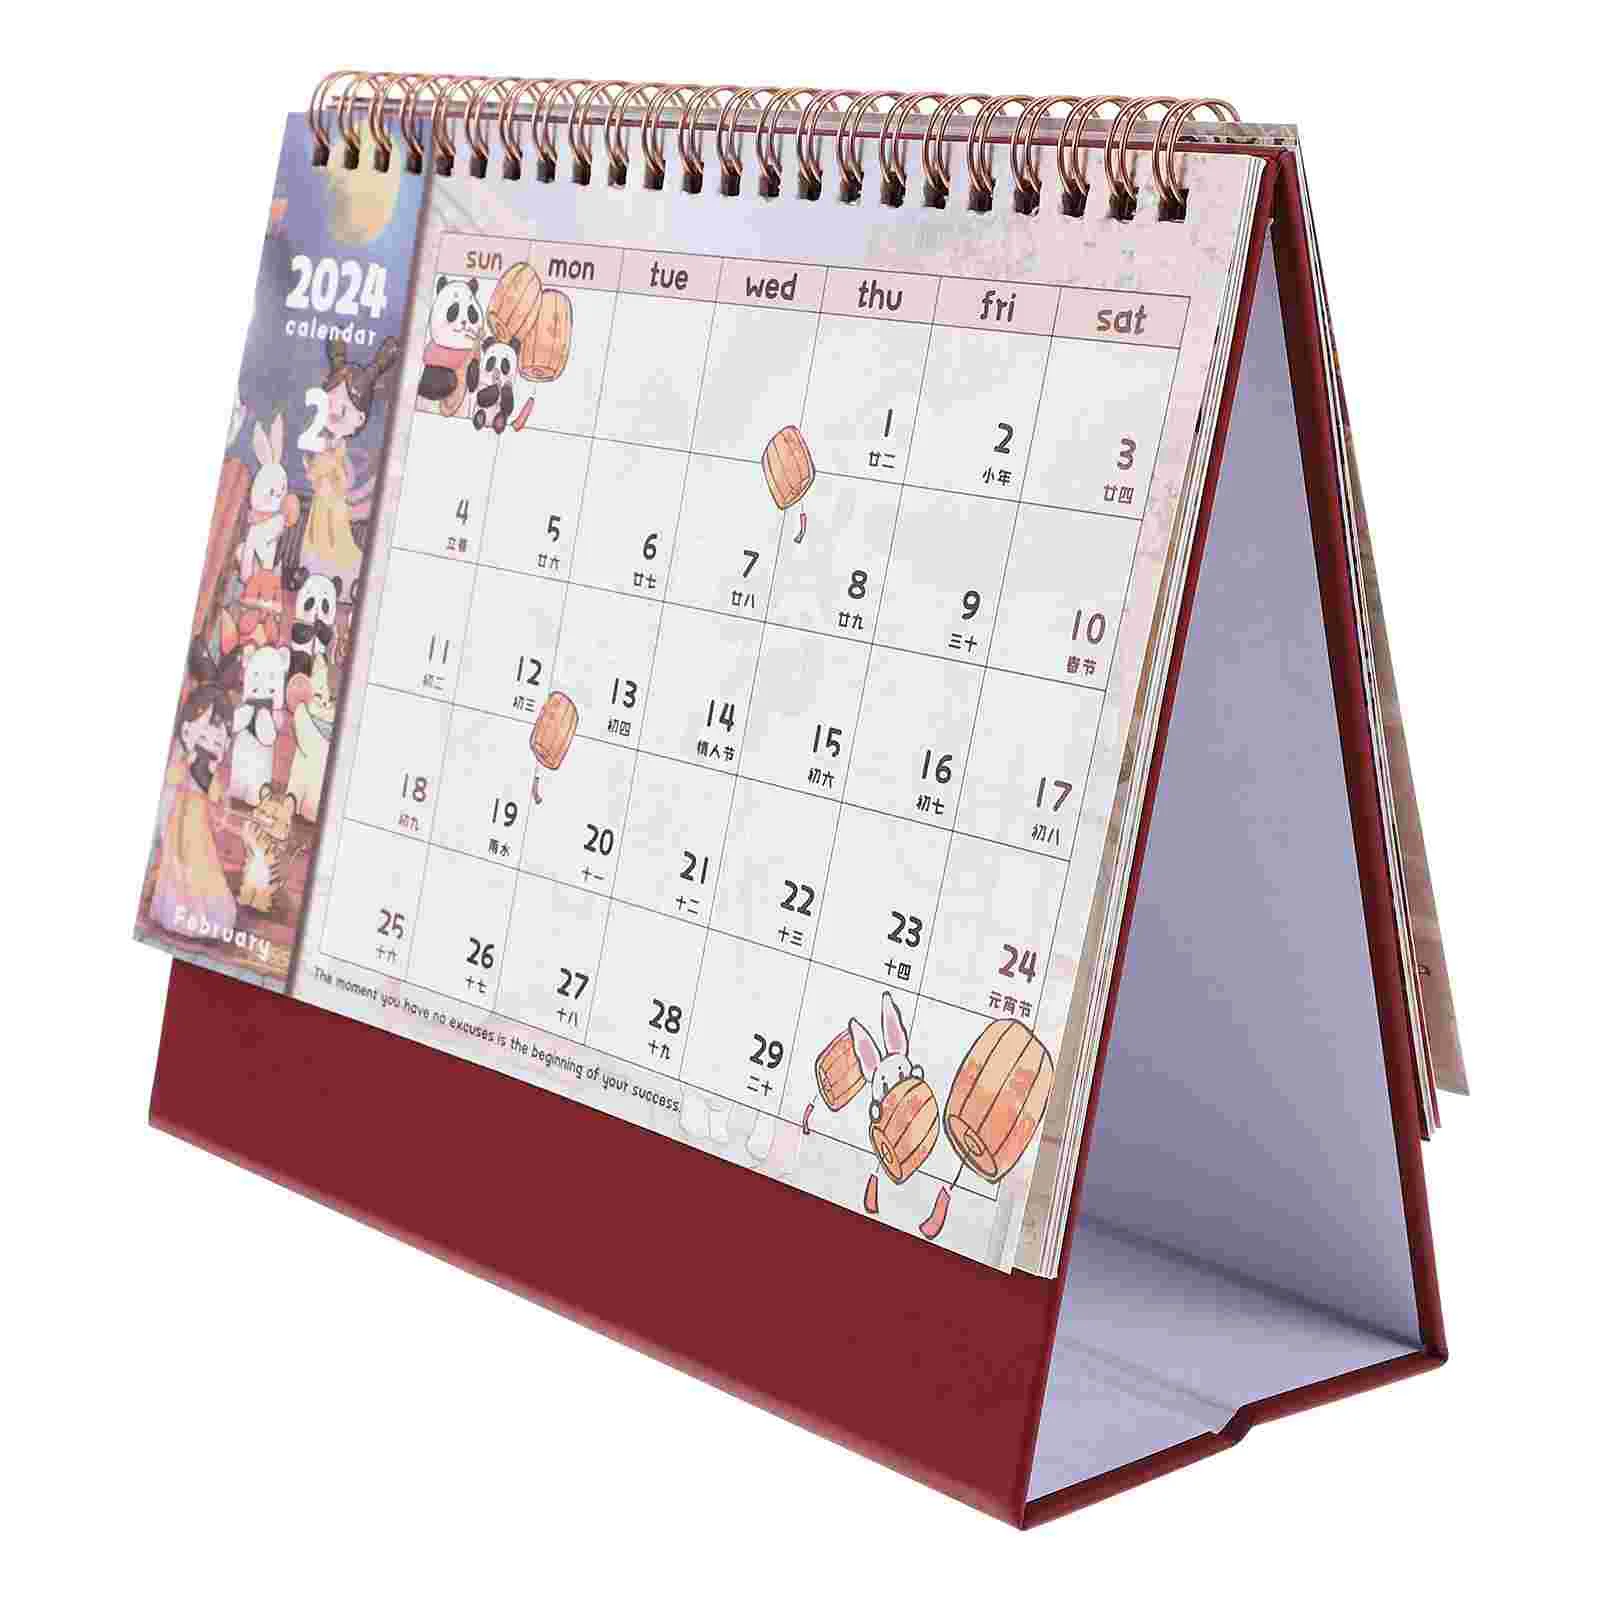 

Складной календарь, настольное украшение, календарь, декоративный календарь